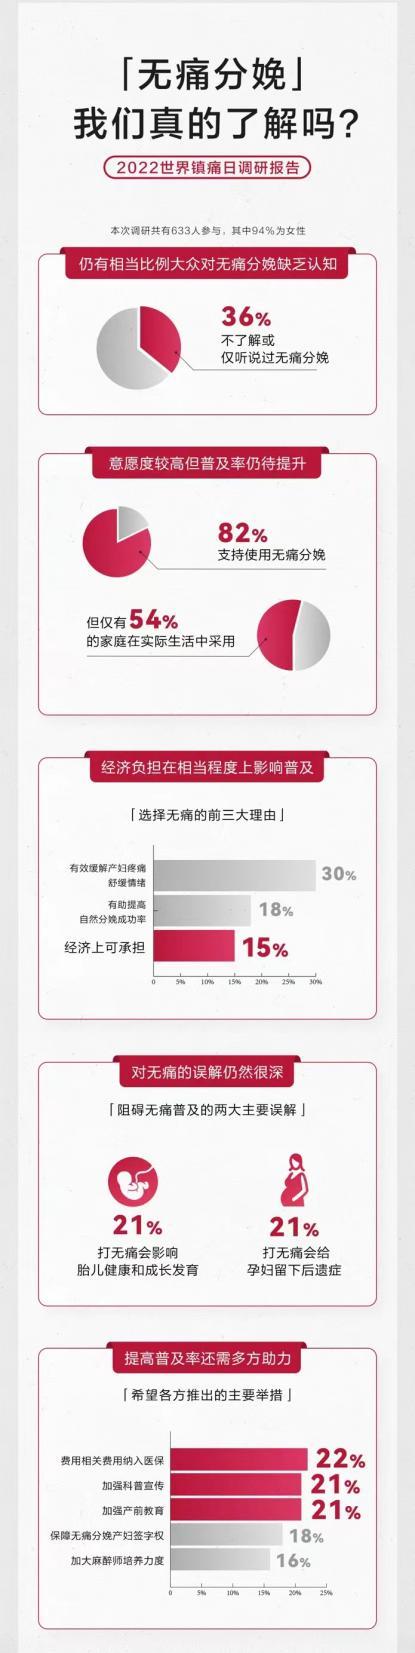 中国无痛分娩仅30%产妇使用